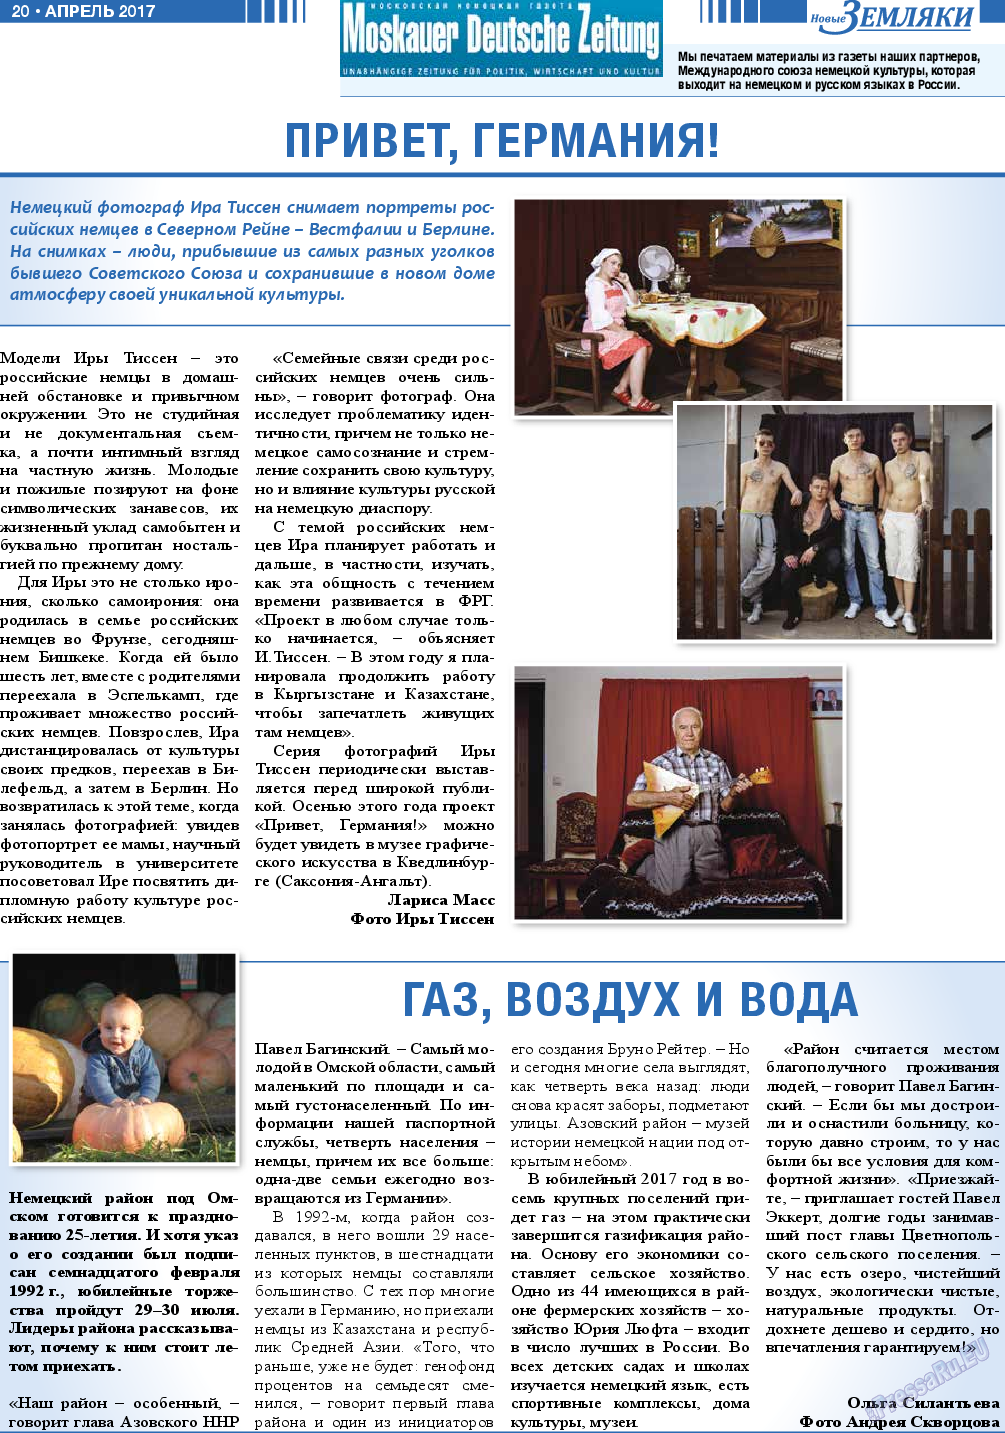 Новые Земляки, газета. 2017 №4 стр.20